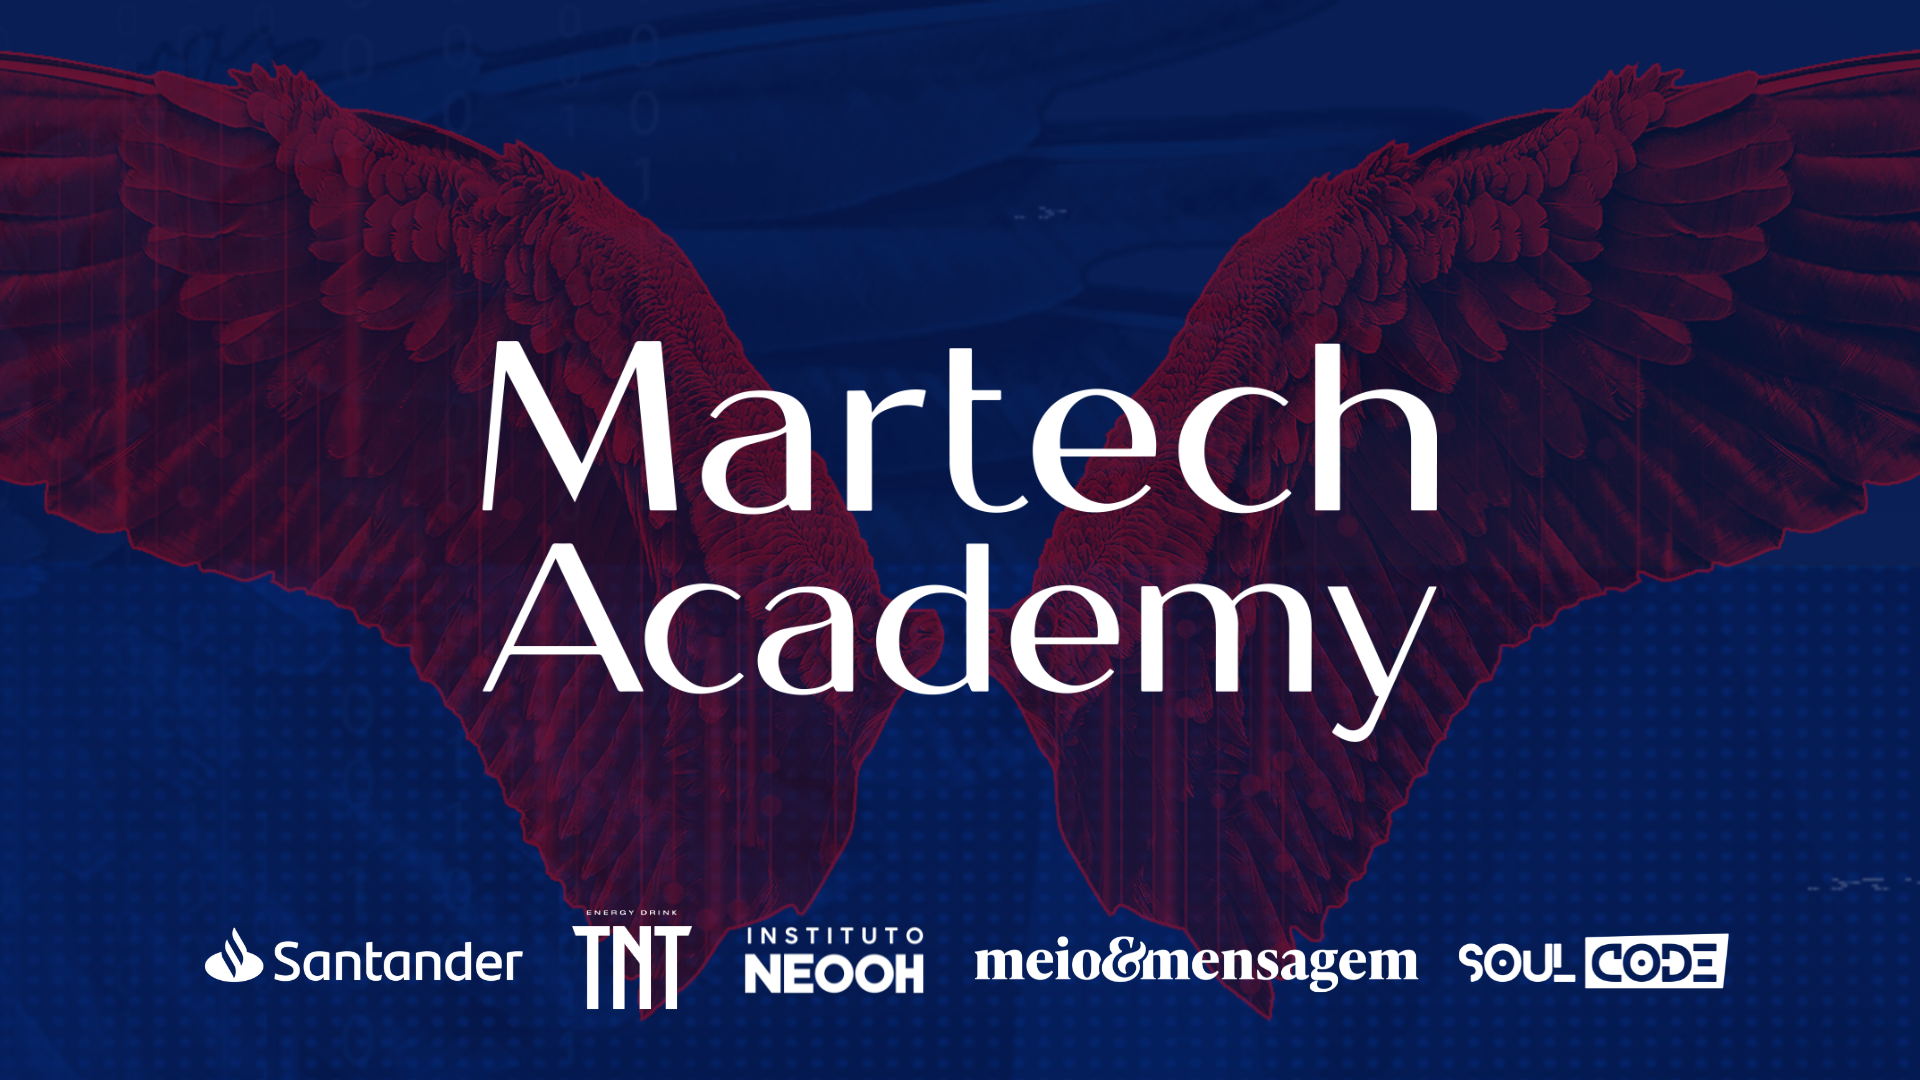 Martech Academy